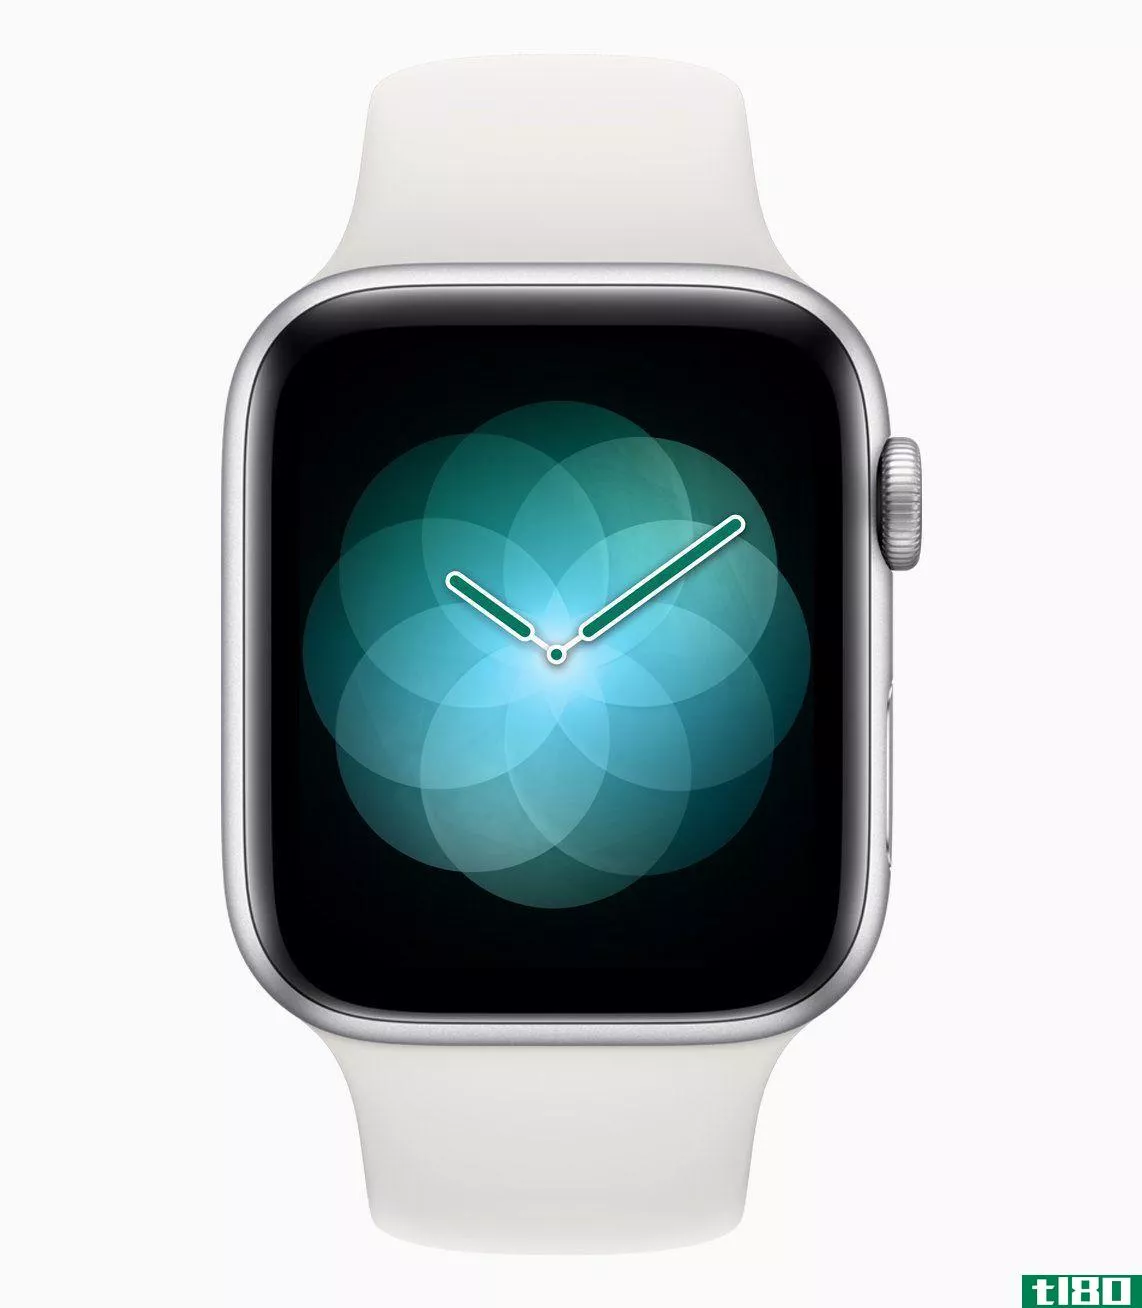 新的iphone和watch对苹果意味着什么